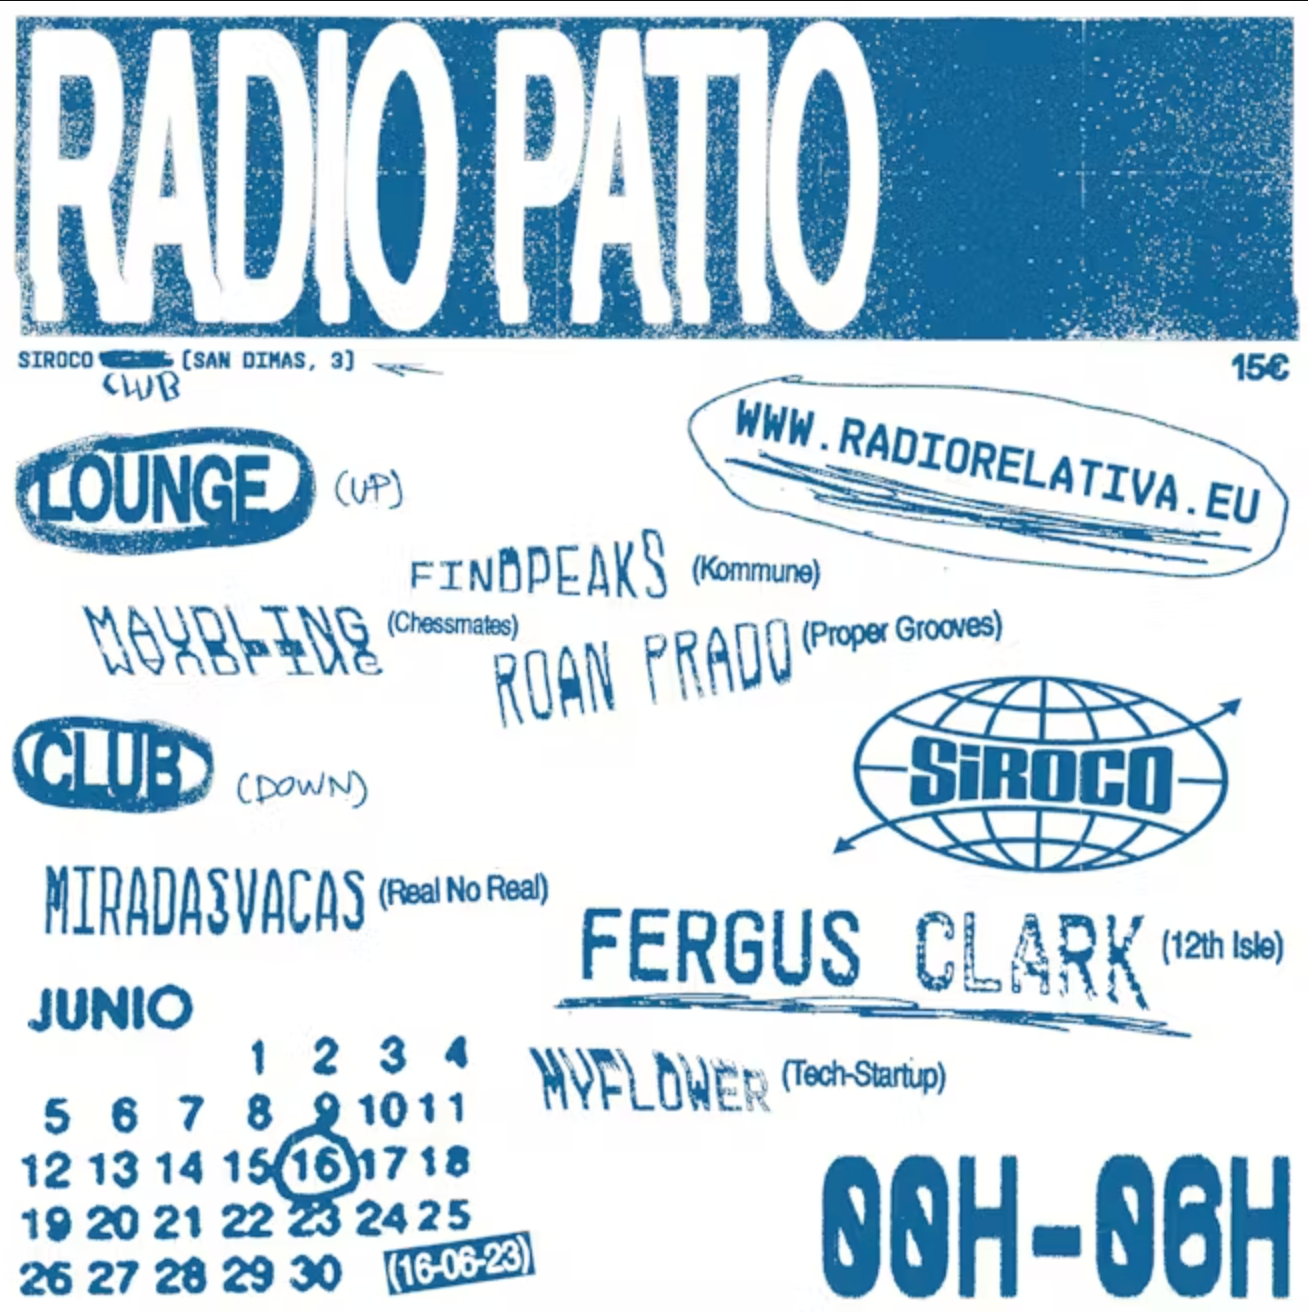 Radio Patio - Página frontal